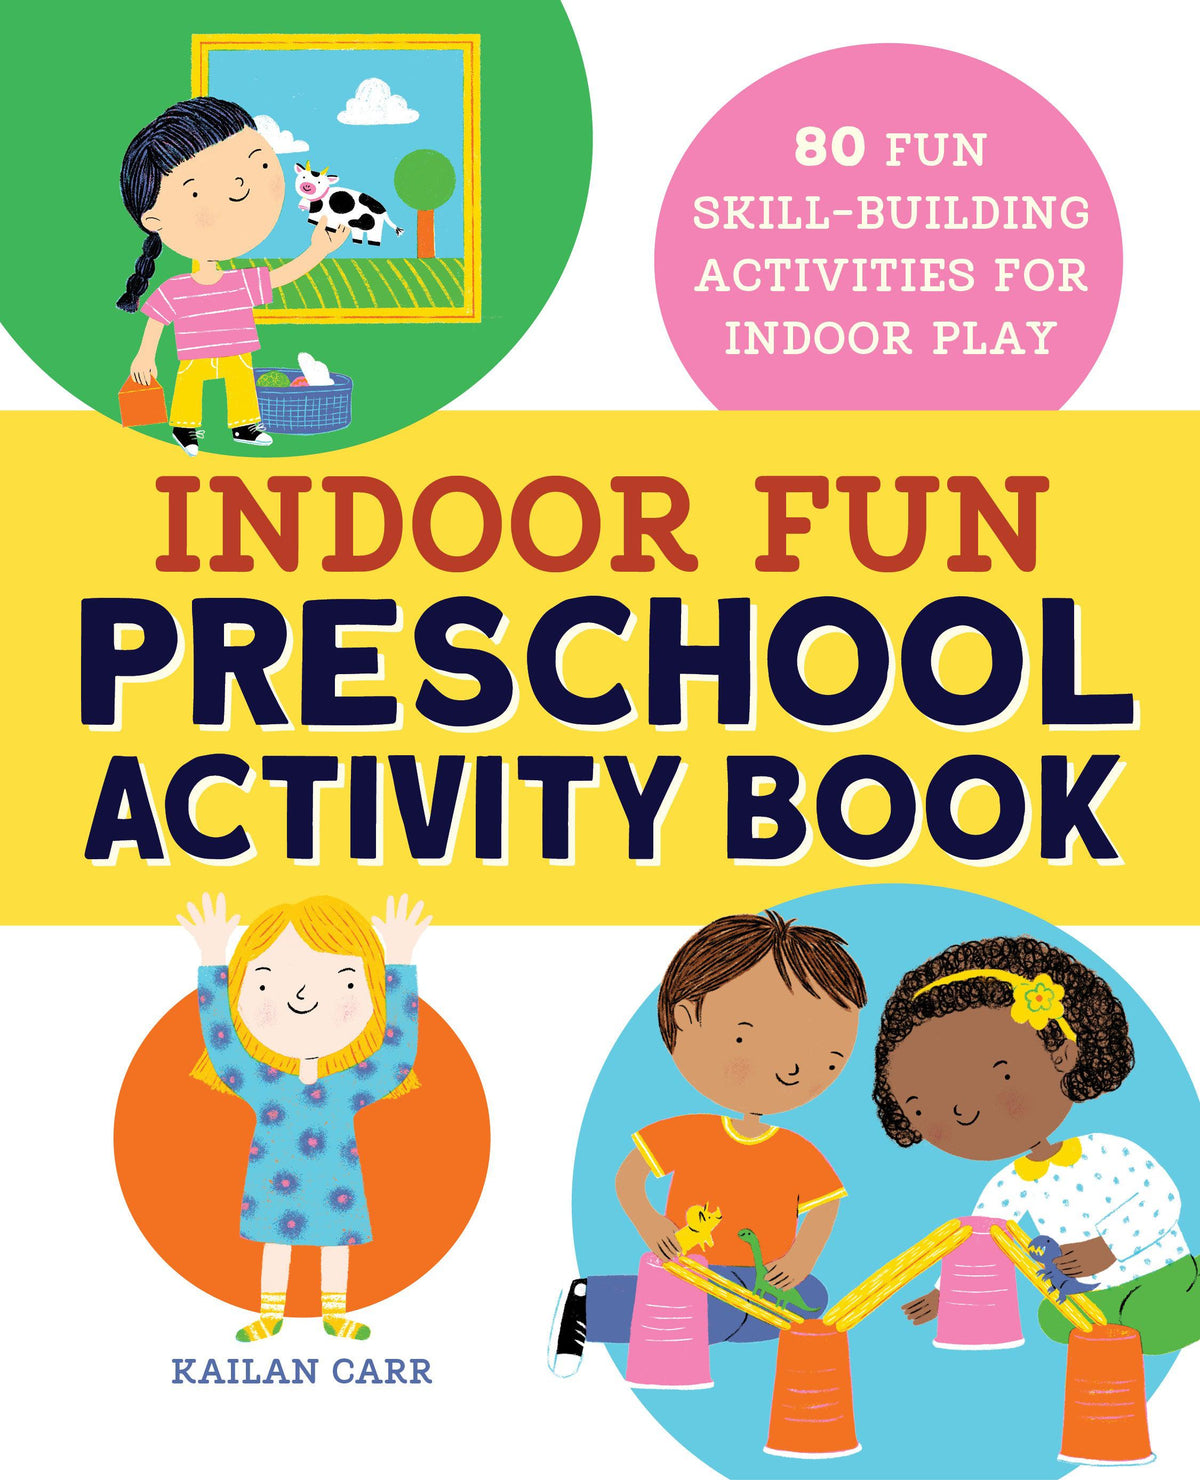 Indoor Fun Preschool Activity Book Resources